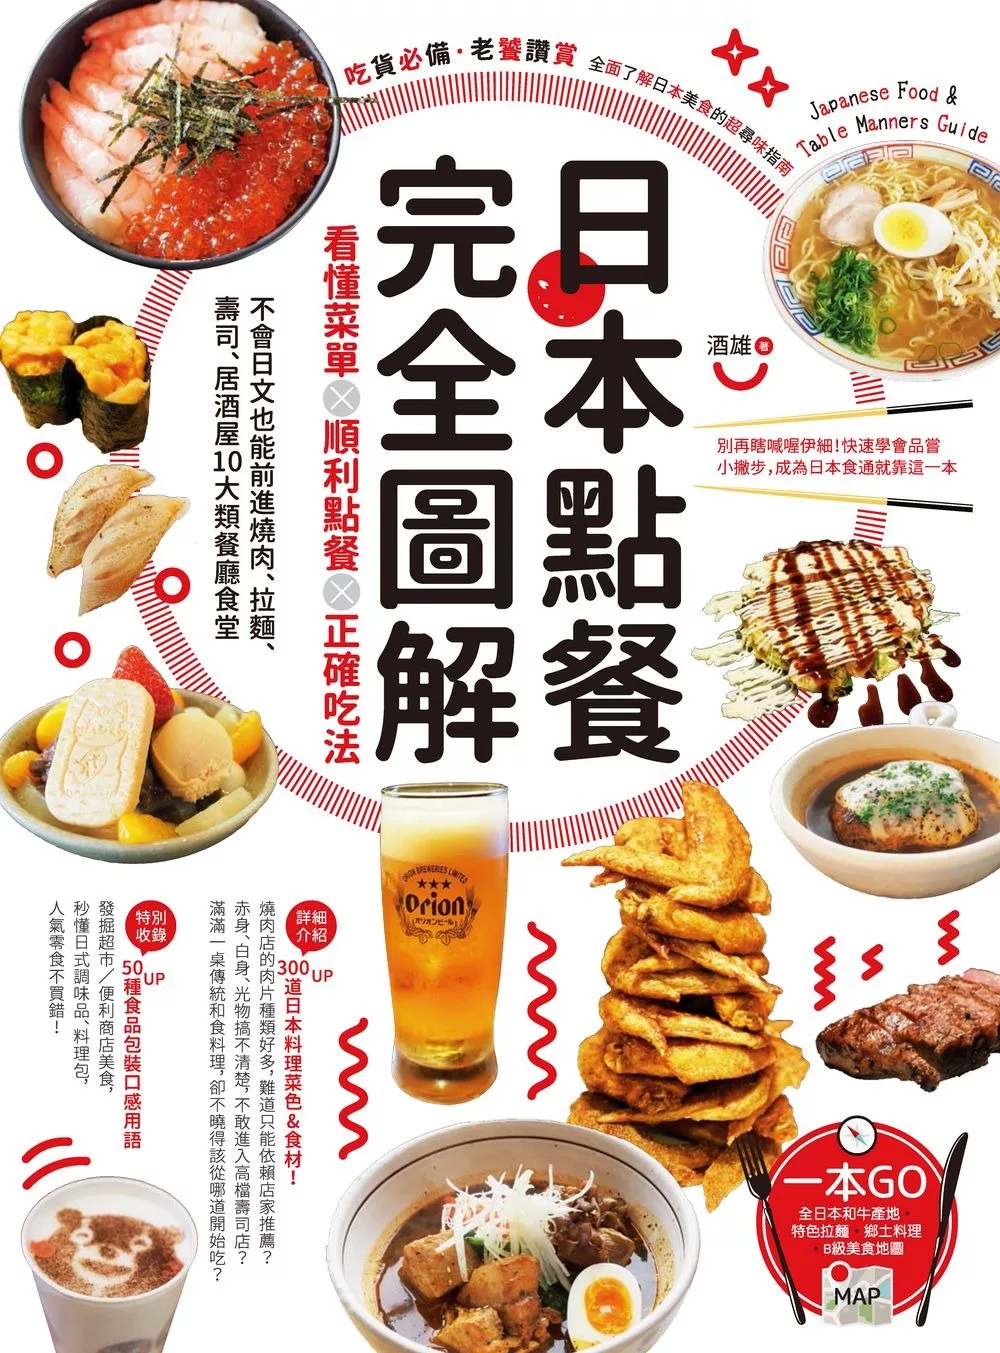 日本點餐完全圖解：看懂菜單╳順利點餐╳正確吃法，不會日文也能前進燒肉、拉麵、壽司、居酒屋10大類餐廳食堂 (電子書)